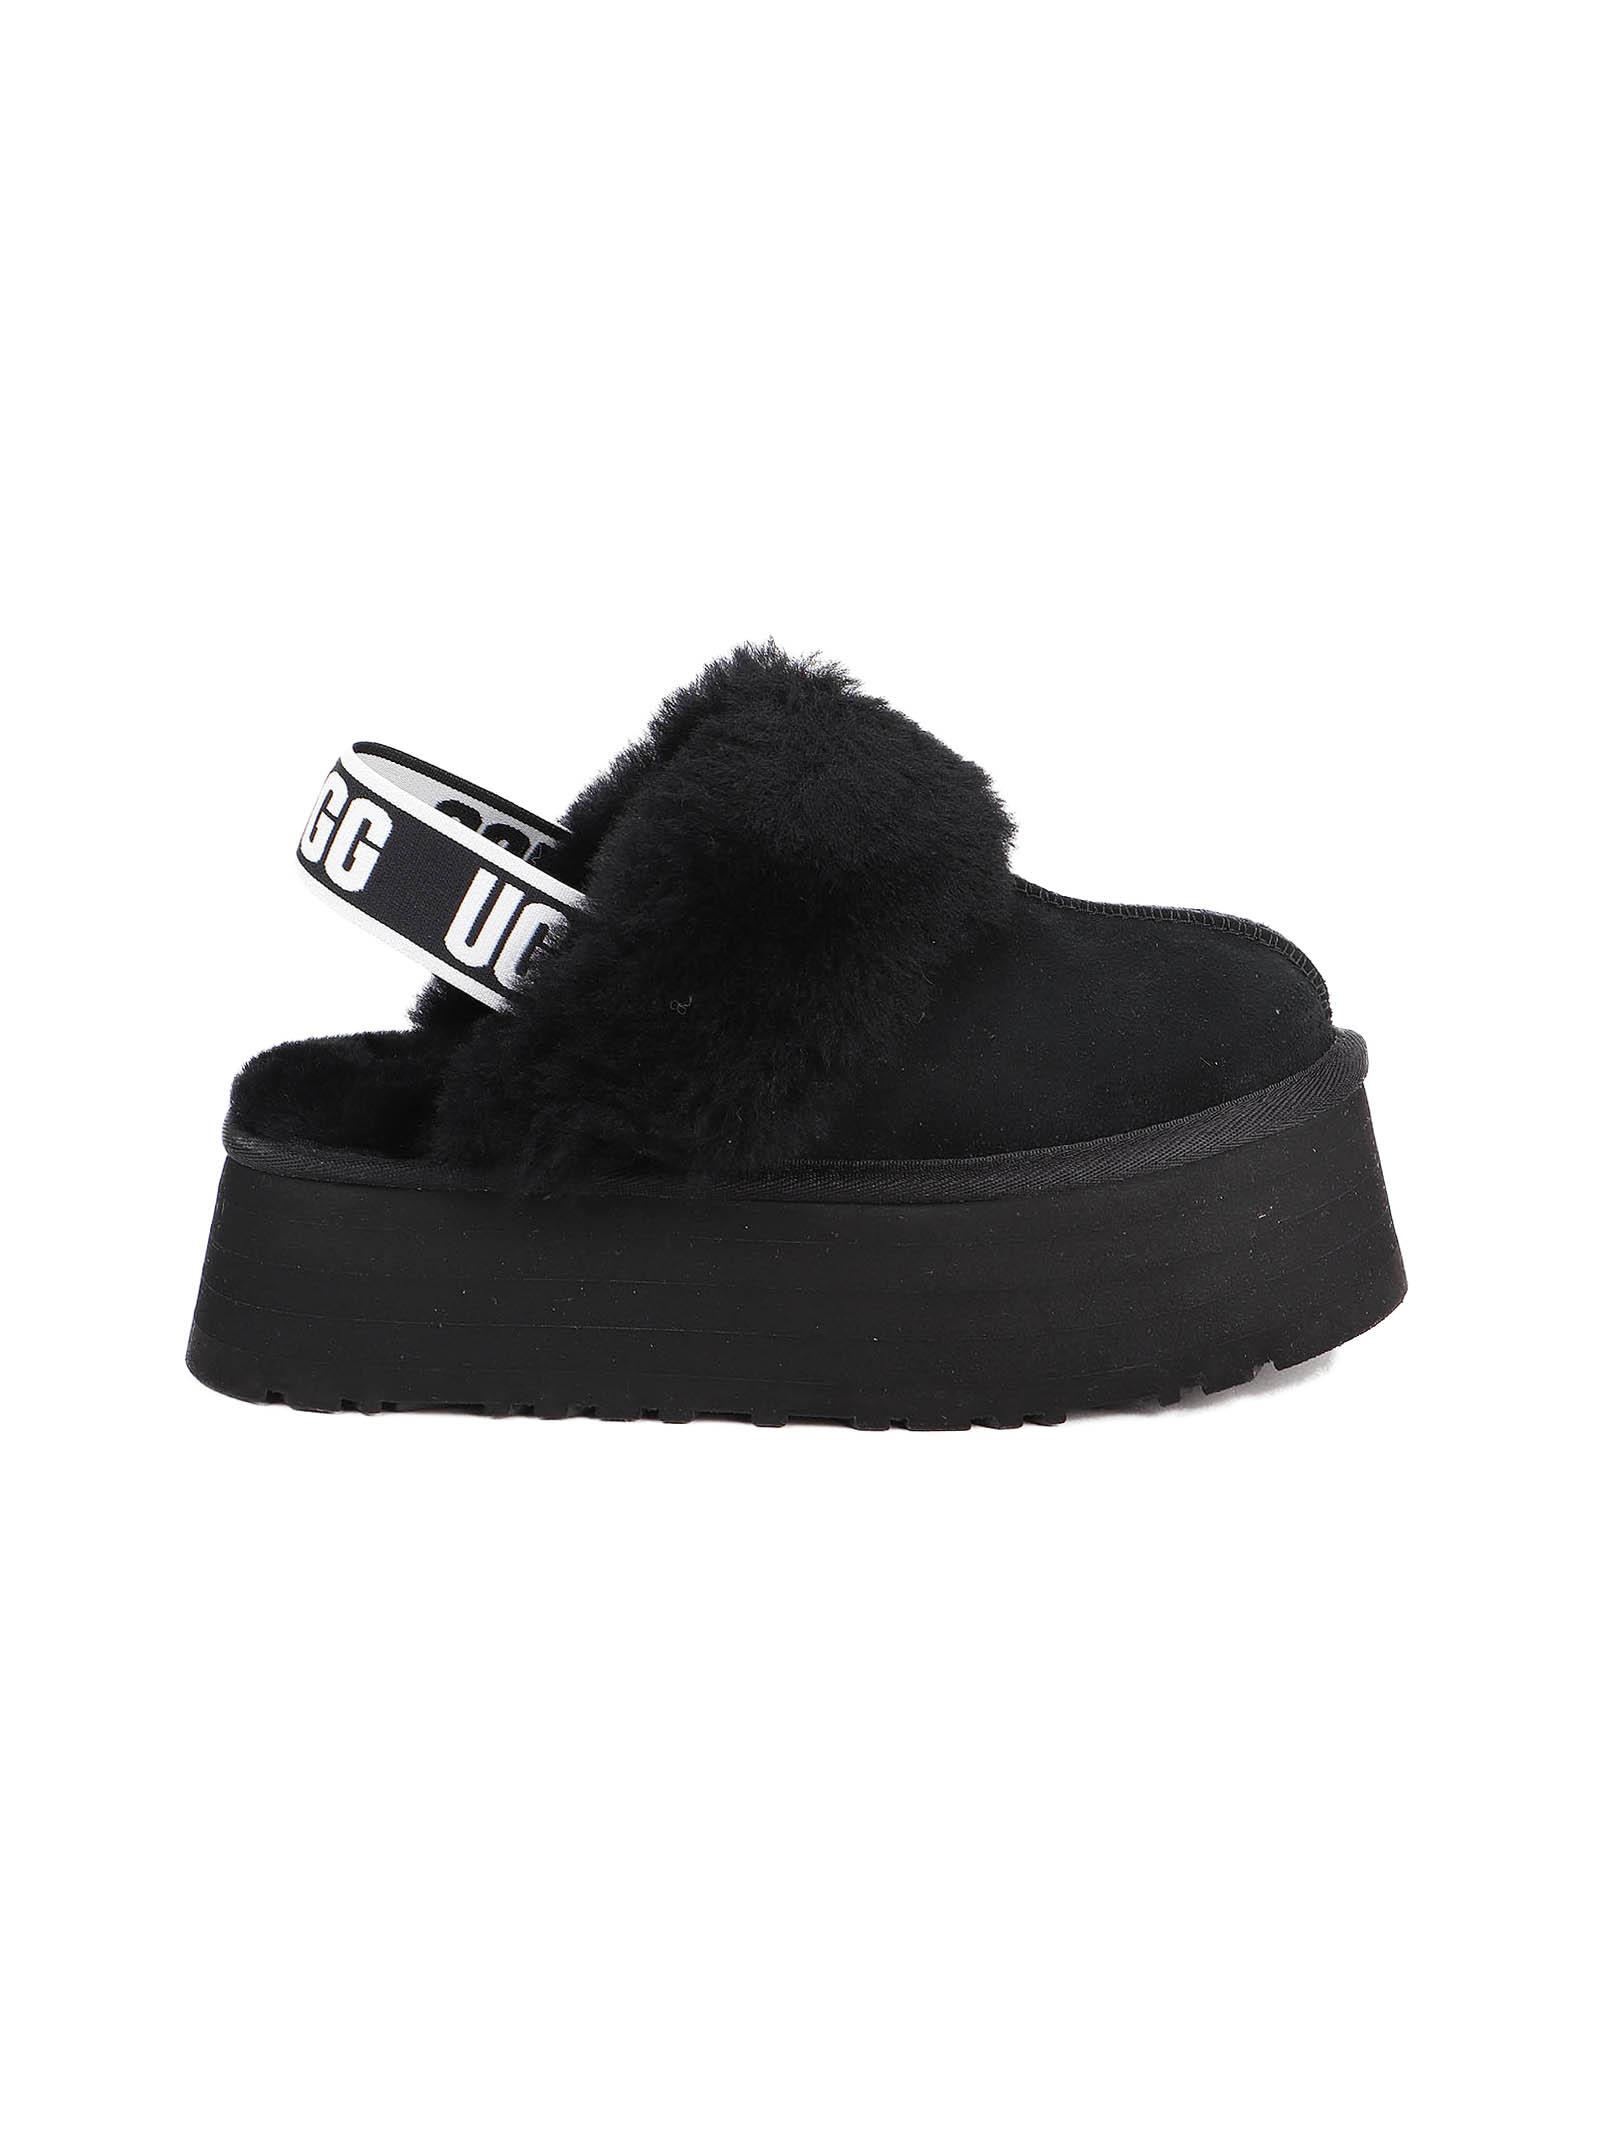 ugg platform slippers